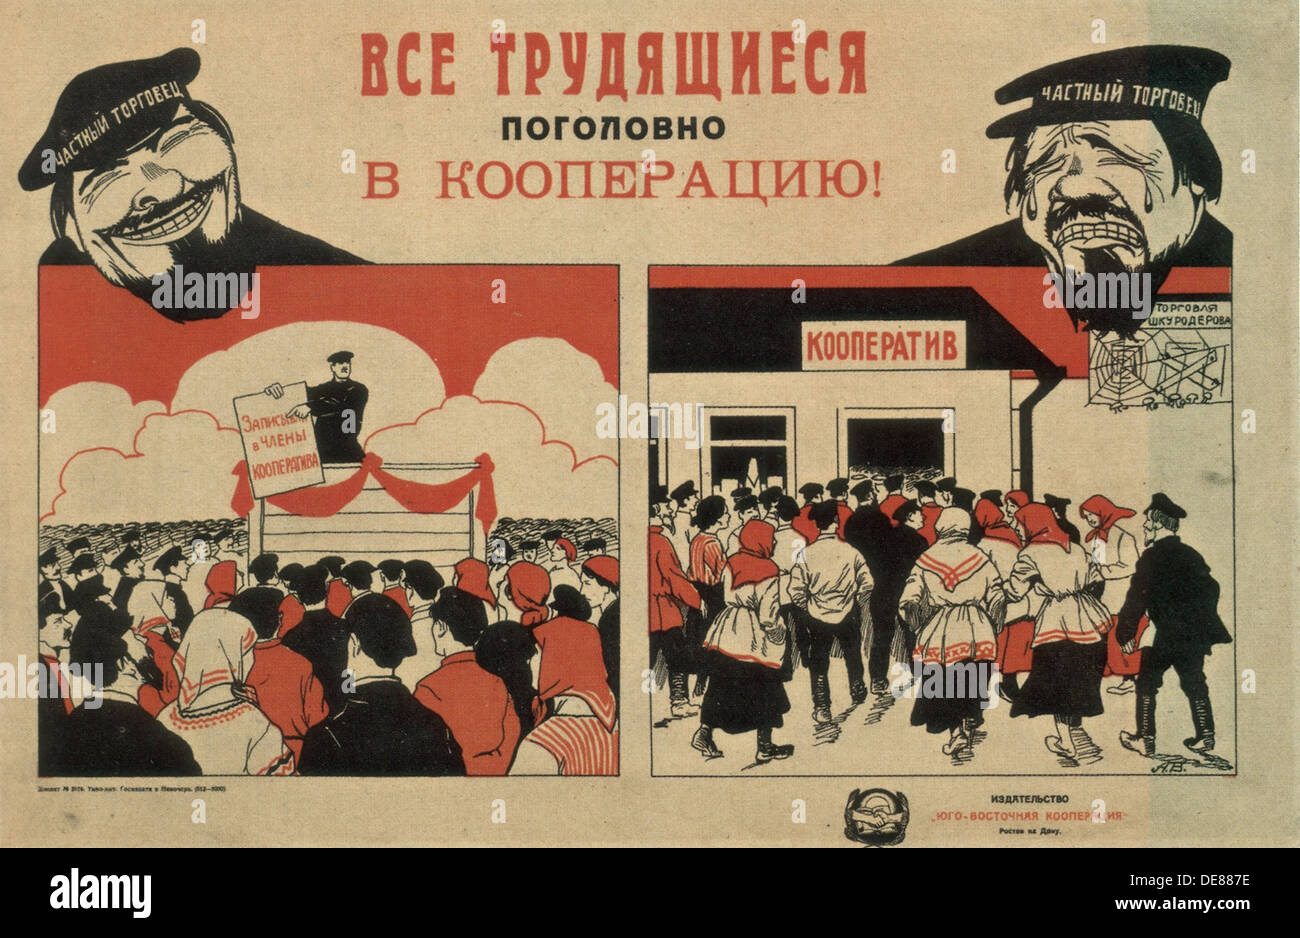 Кооперация в рамке. НЭП плакаты 1921. Кооператив плакат СССР. Новая экономическая политика плакаты НЭП. НЭП плакаты кооперация.